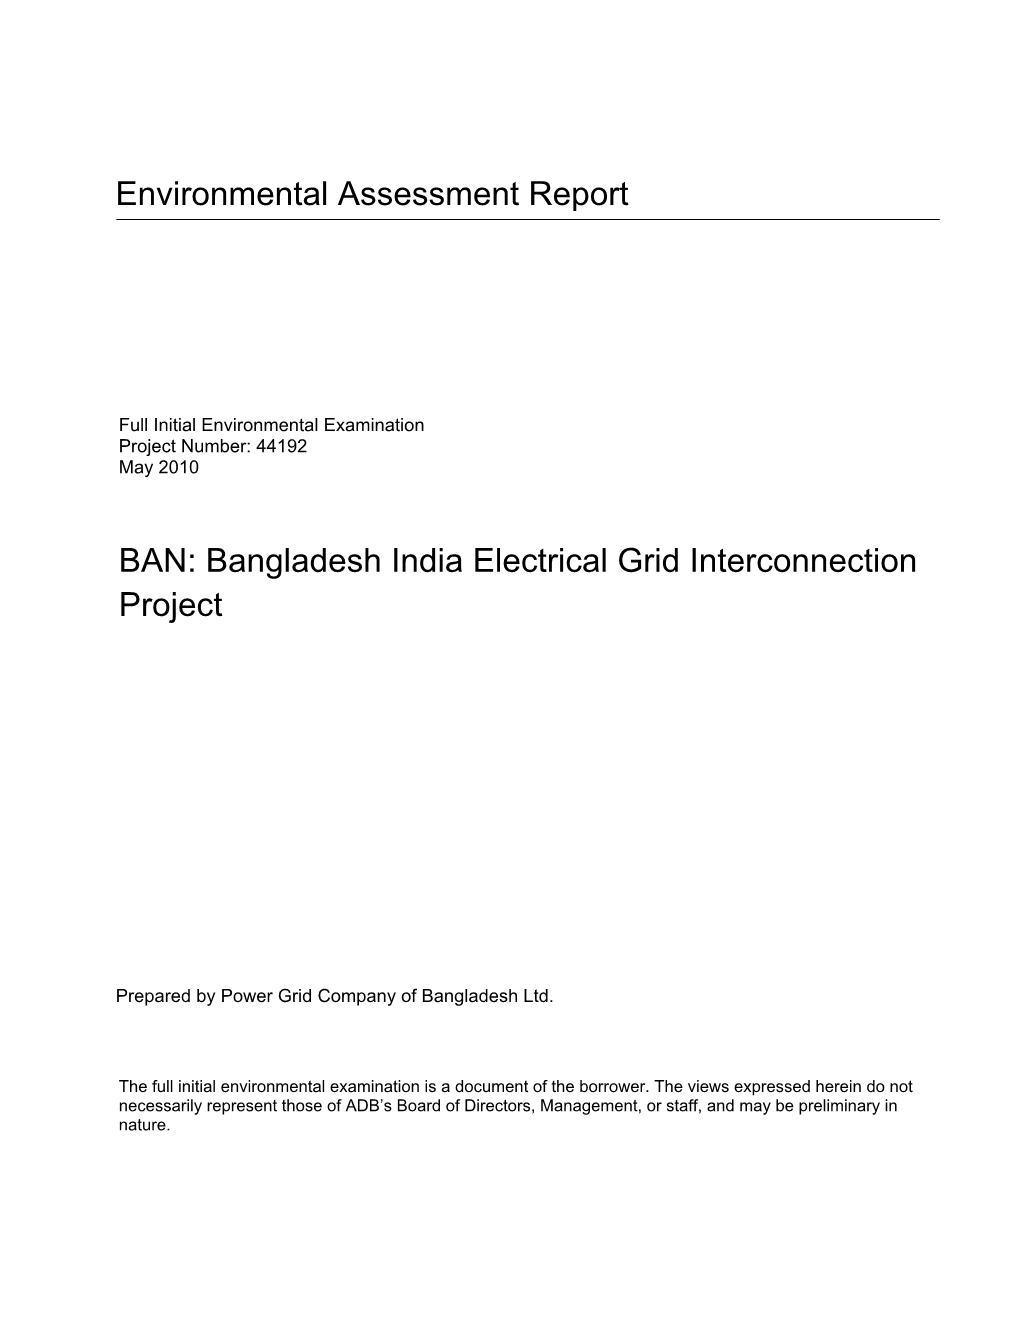 Initial Environmental Examination: Bangladesh